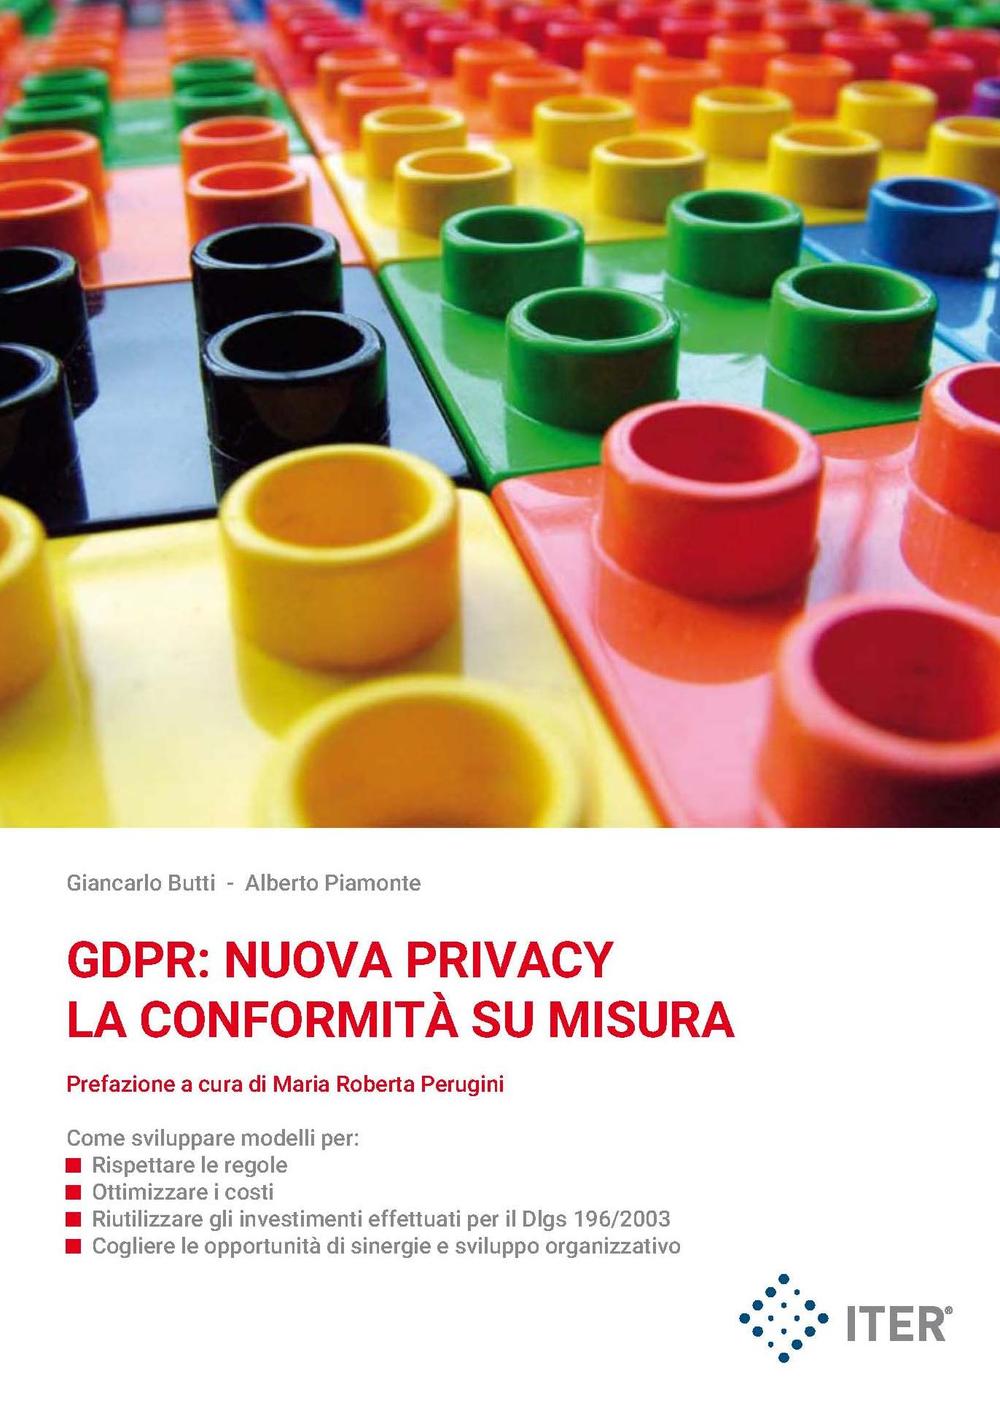 GDPR: nuova privacy. La conformità su misura